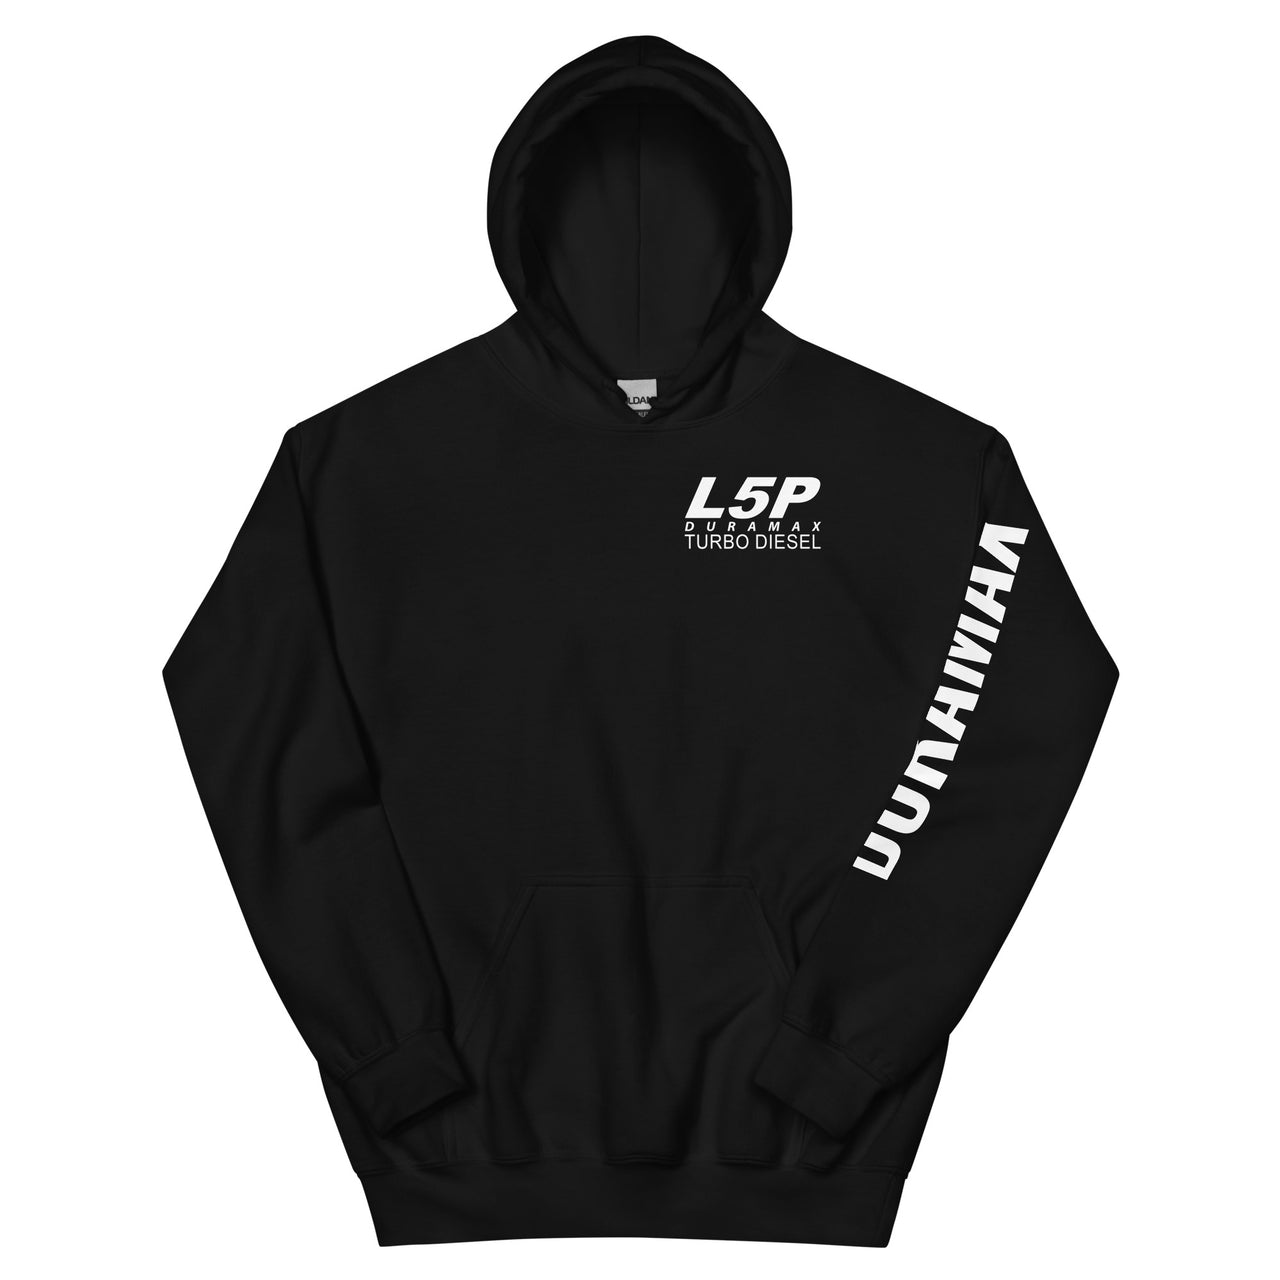 L5P Duramax Hoodie Pullover Sweatshirt With Sleeve Print - black